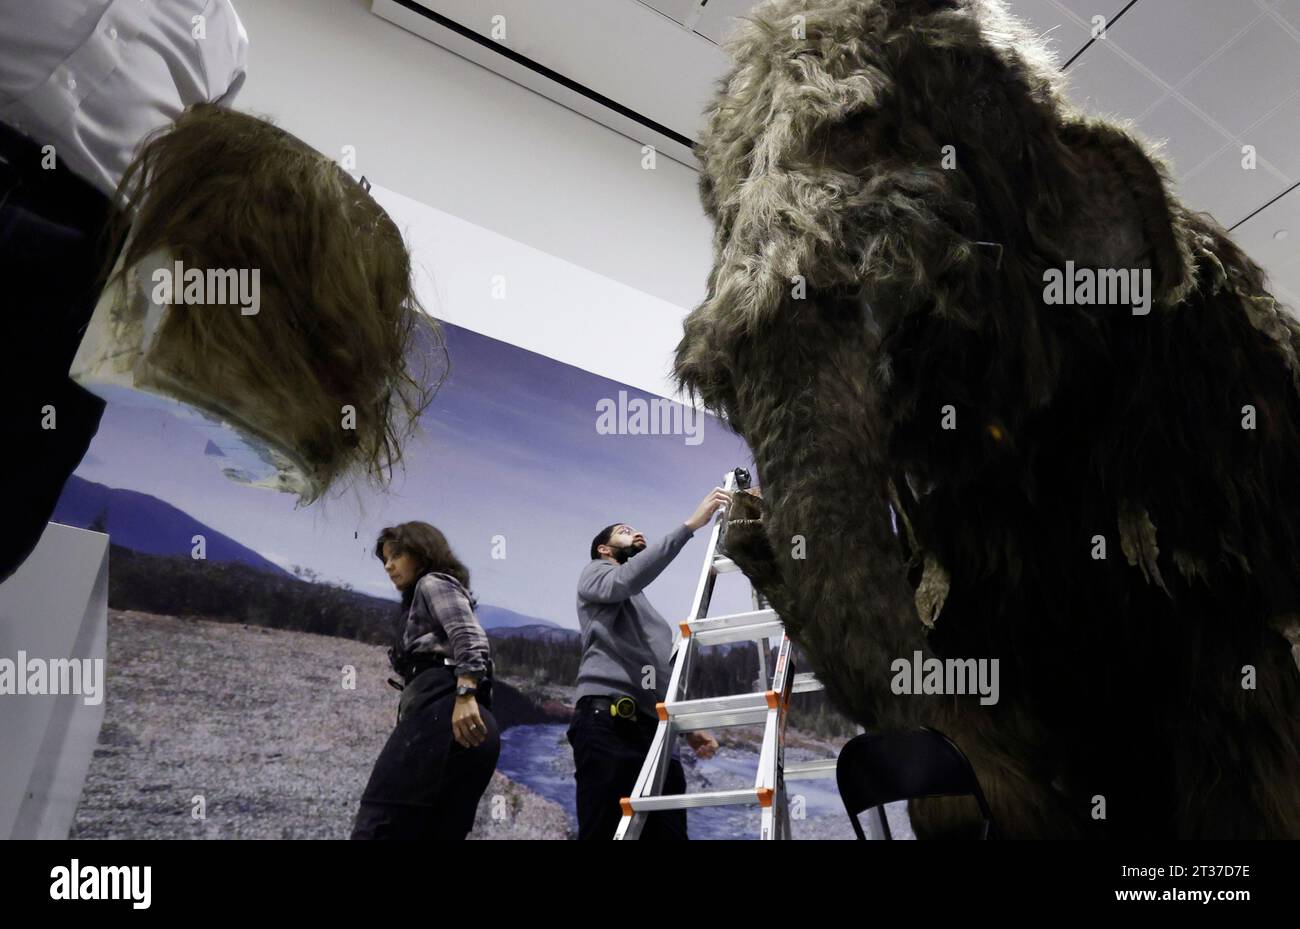 New York, États-Unis. 03 janvier 2023. Les ouvriers assemblent la tête, les défenses et les autres derniers ajustements alors qu'ils terminent l'installation d'un modèle grandeur nature d'un mammouth laineux, l'un des géants de l'âge glaciaire, au Musée américain d'histoire naturelle de New York le lundi 23 octobre 2023. Le Woolly Mammoth grandeur nature arrive à New York dans le cadre de la nouvelle exposition, le monde secret des éléphants, qui ouvrira en novembre 13. Photo de John Angelillo/UPI crédit : UPI/Alamy Live News Banque D'Images